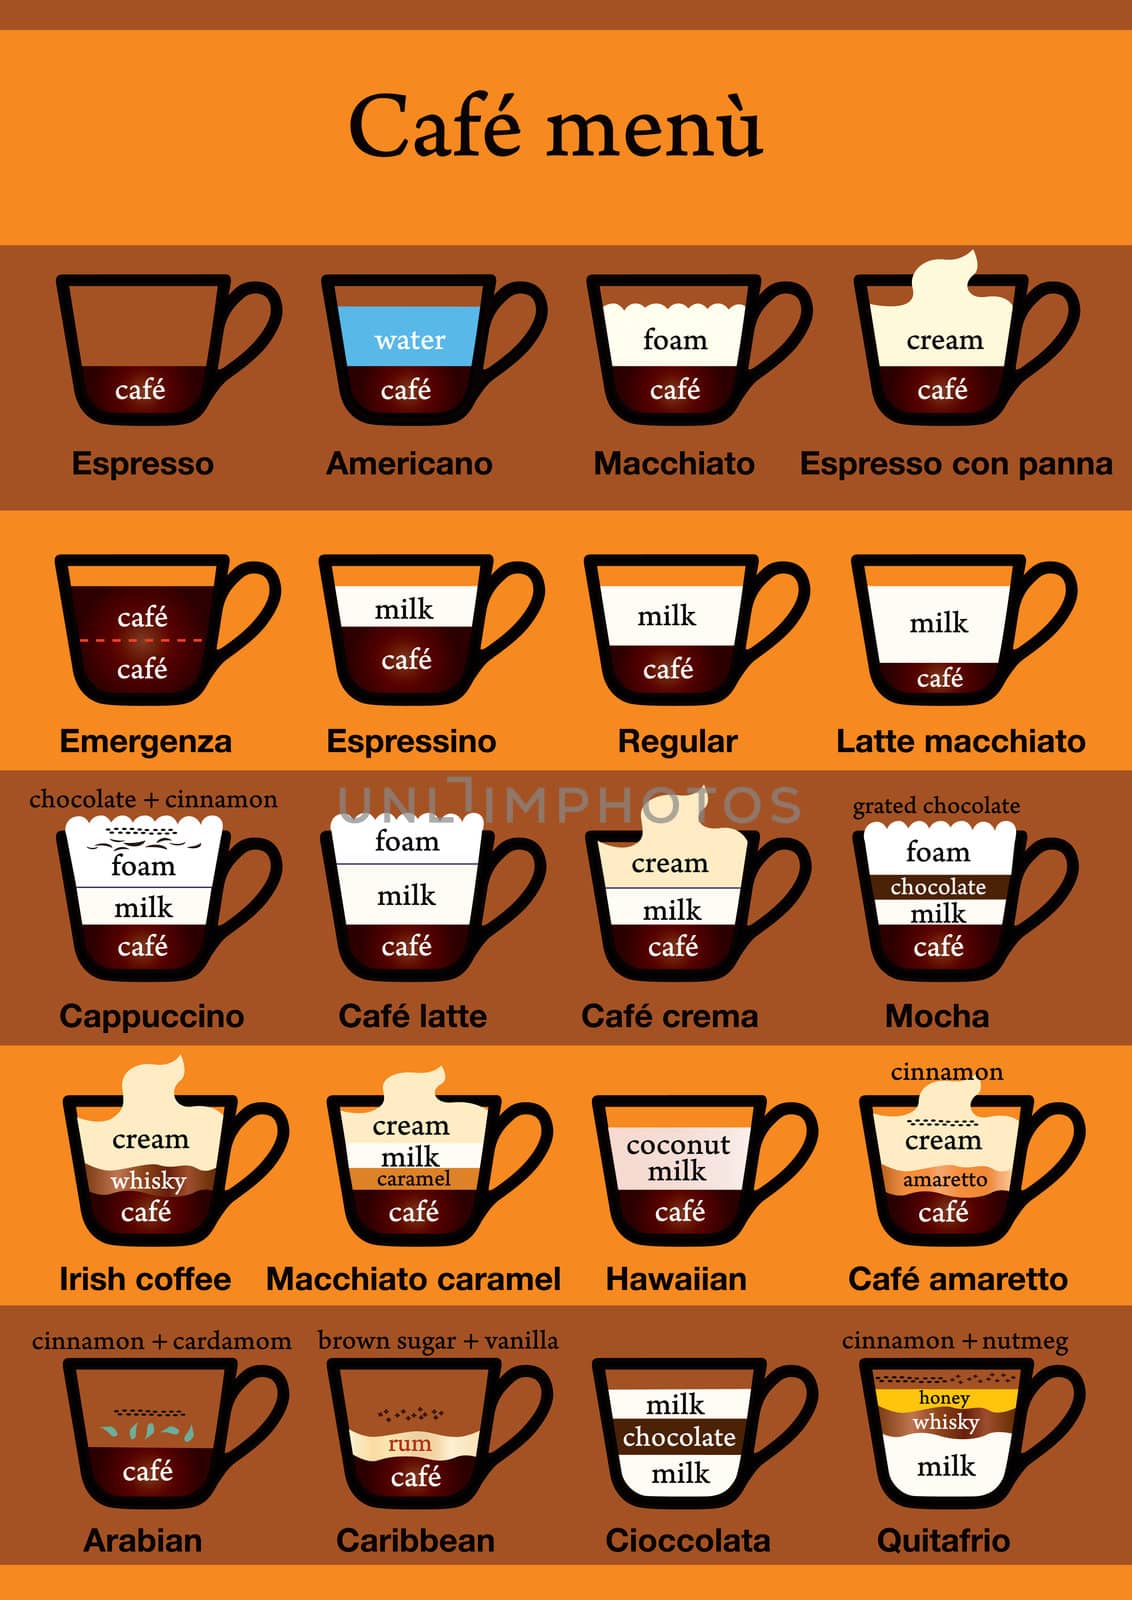 Coffee menu table by Vectorex